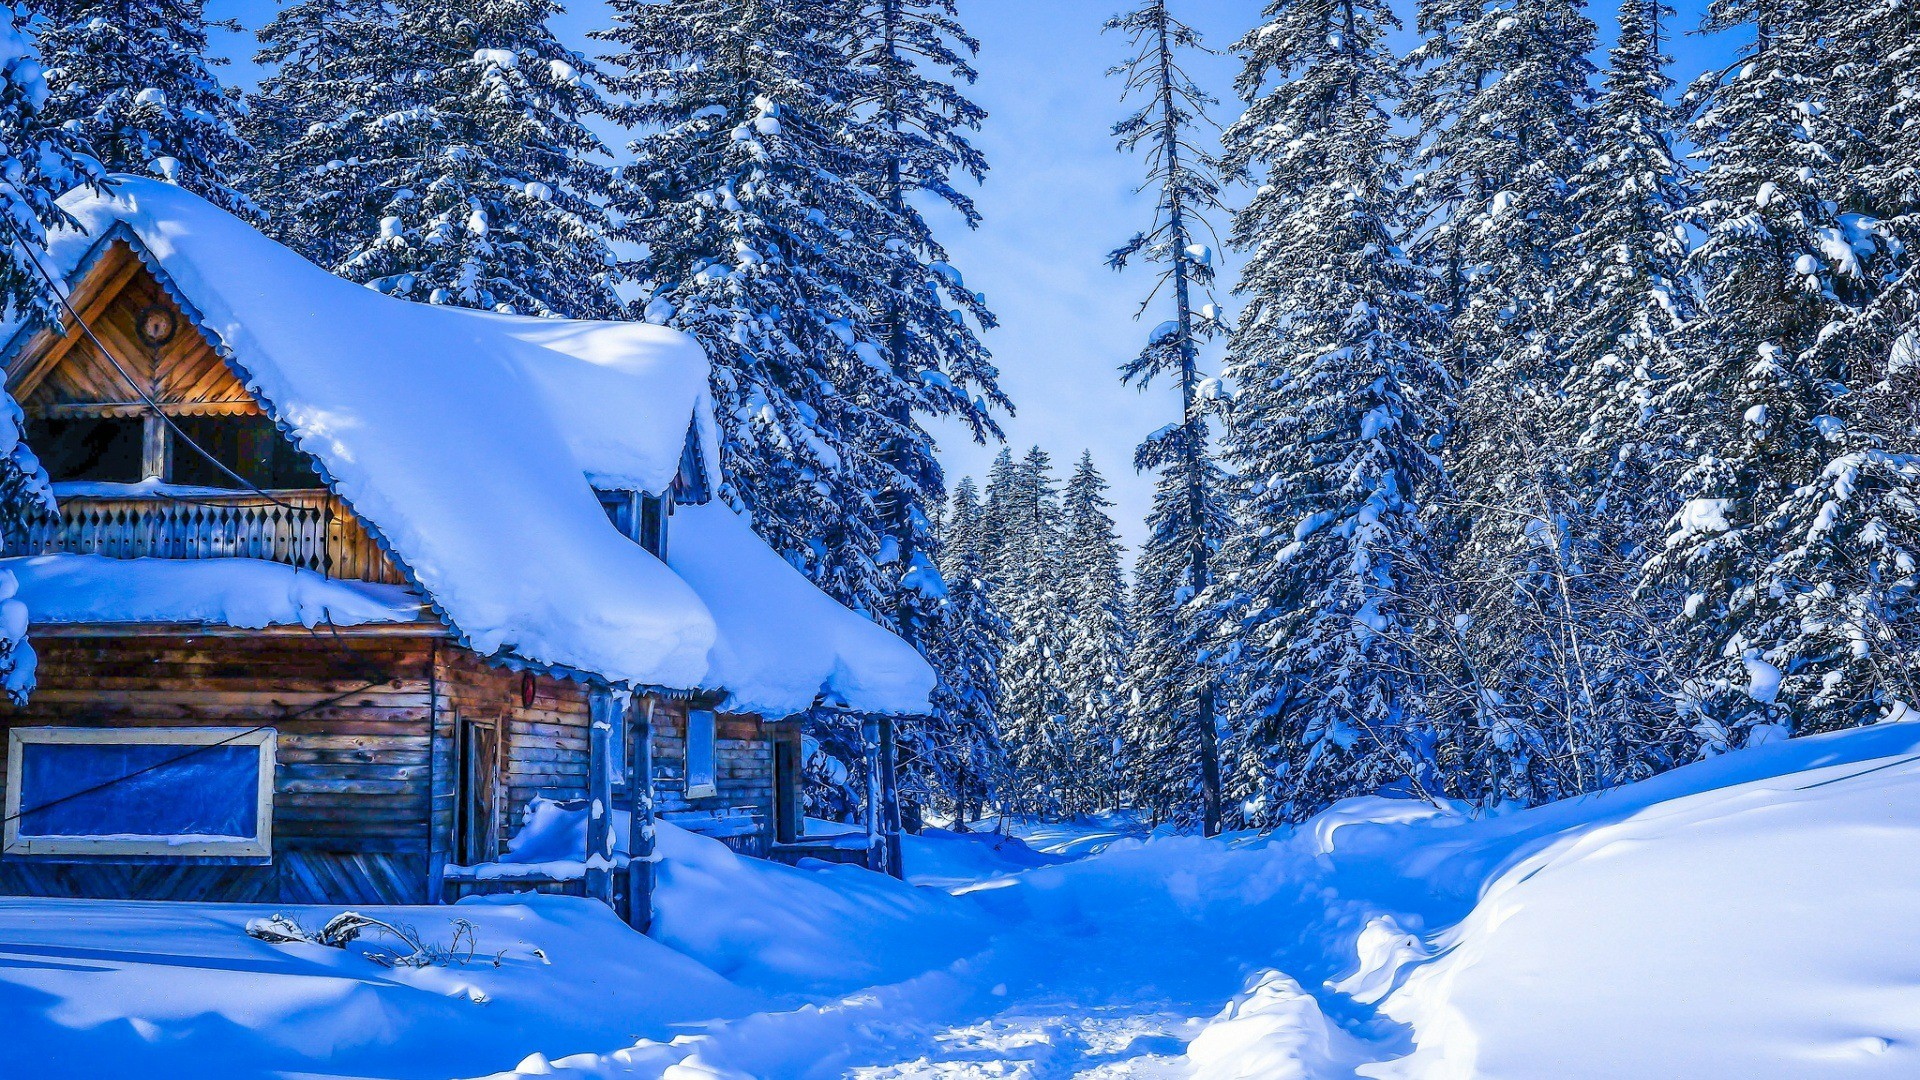 Cabin in Snowy Winter Forest